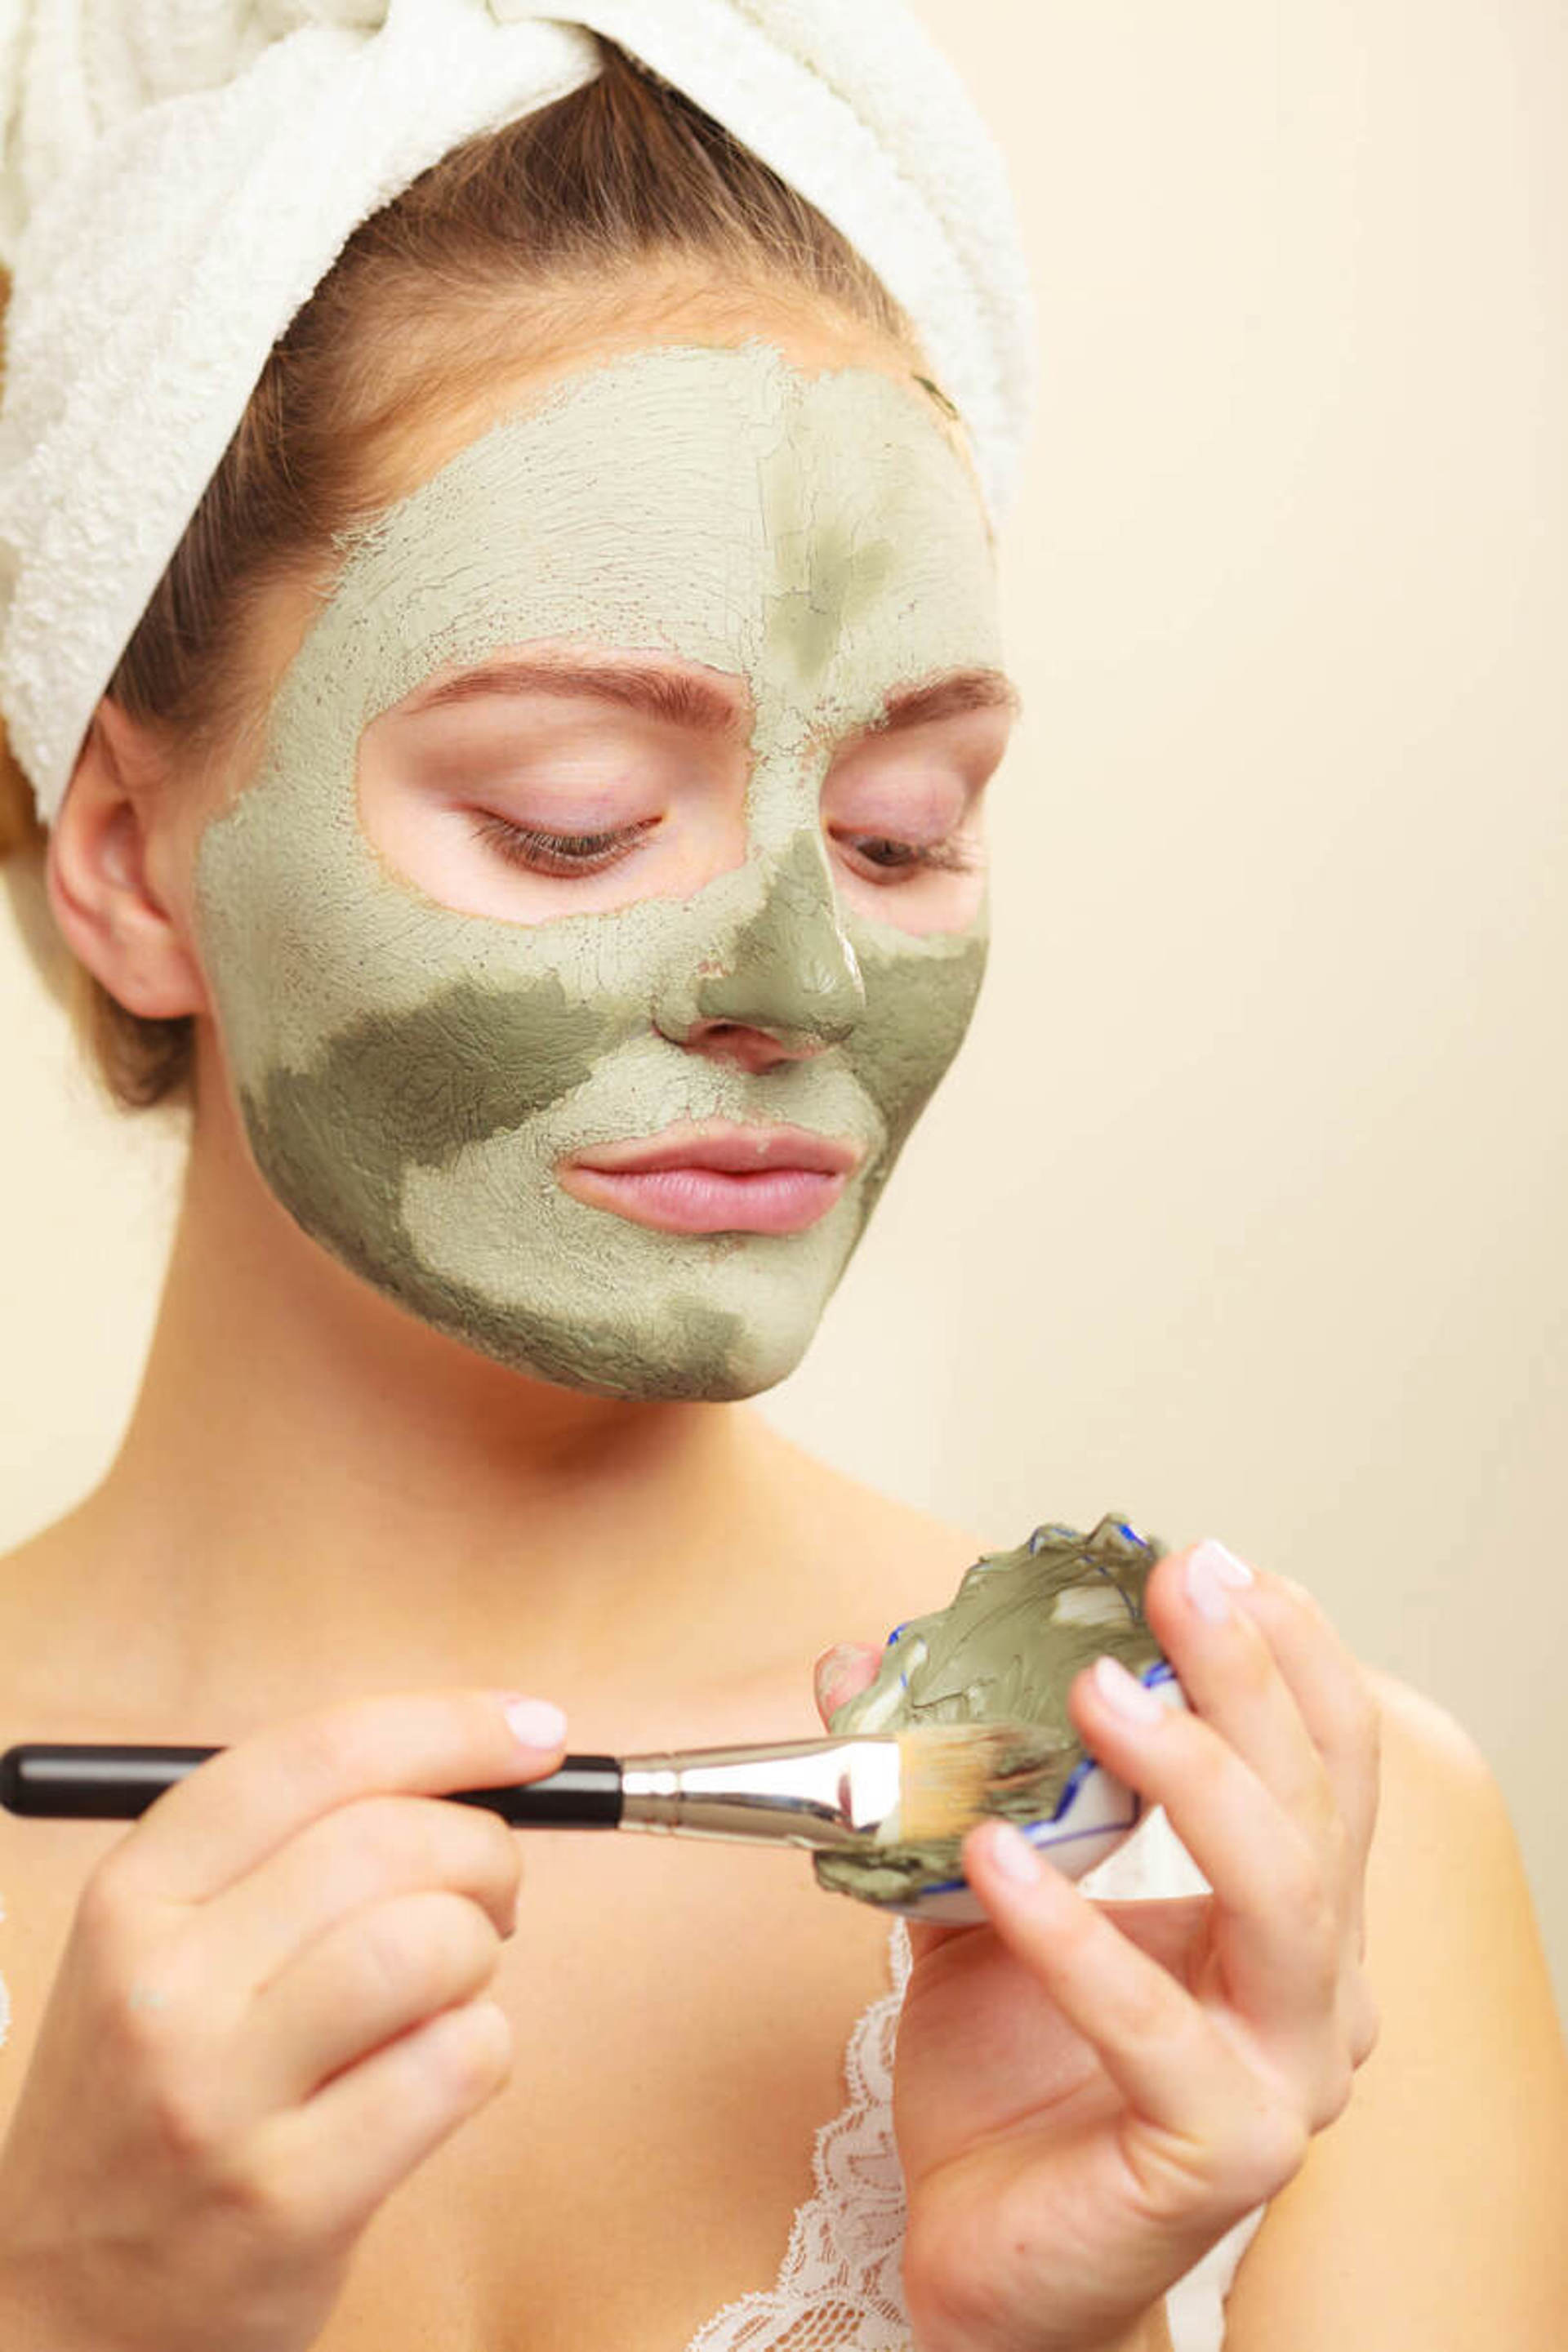 Yeşil kil maskesi faydaları nedir? Ne işe yarar?